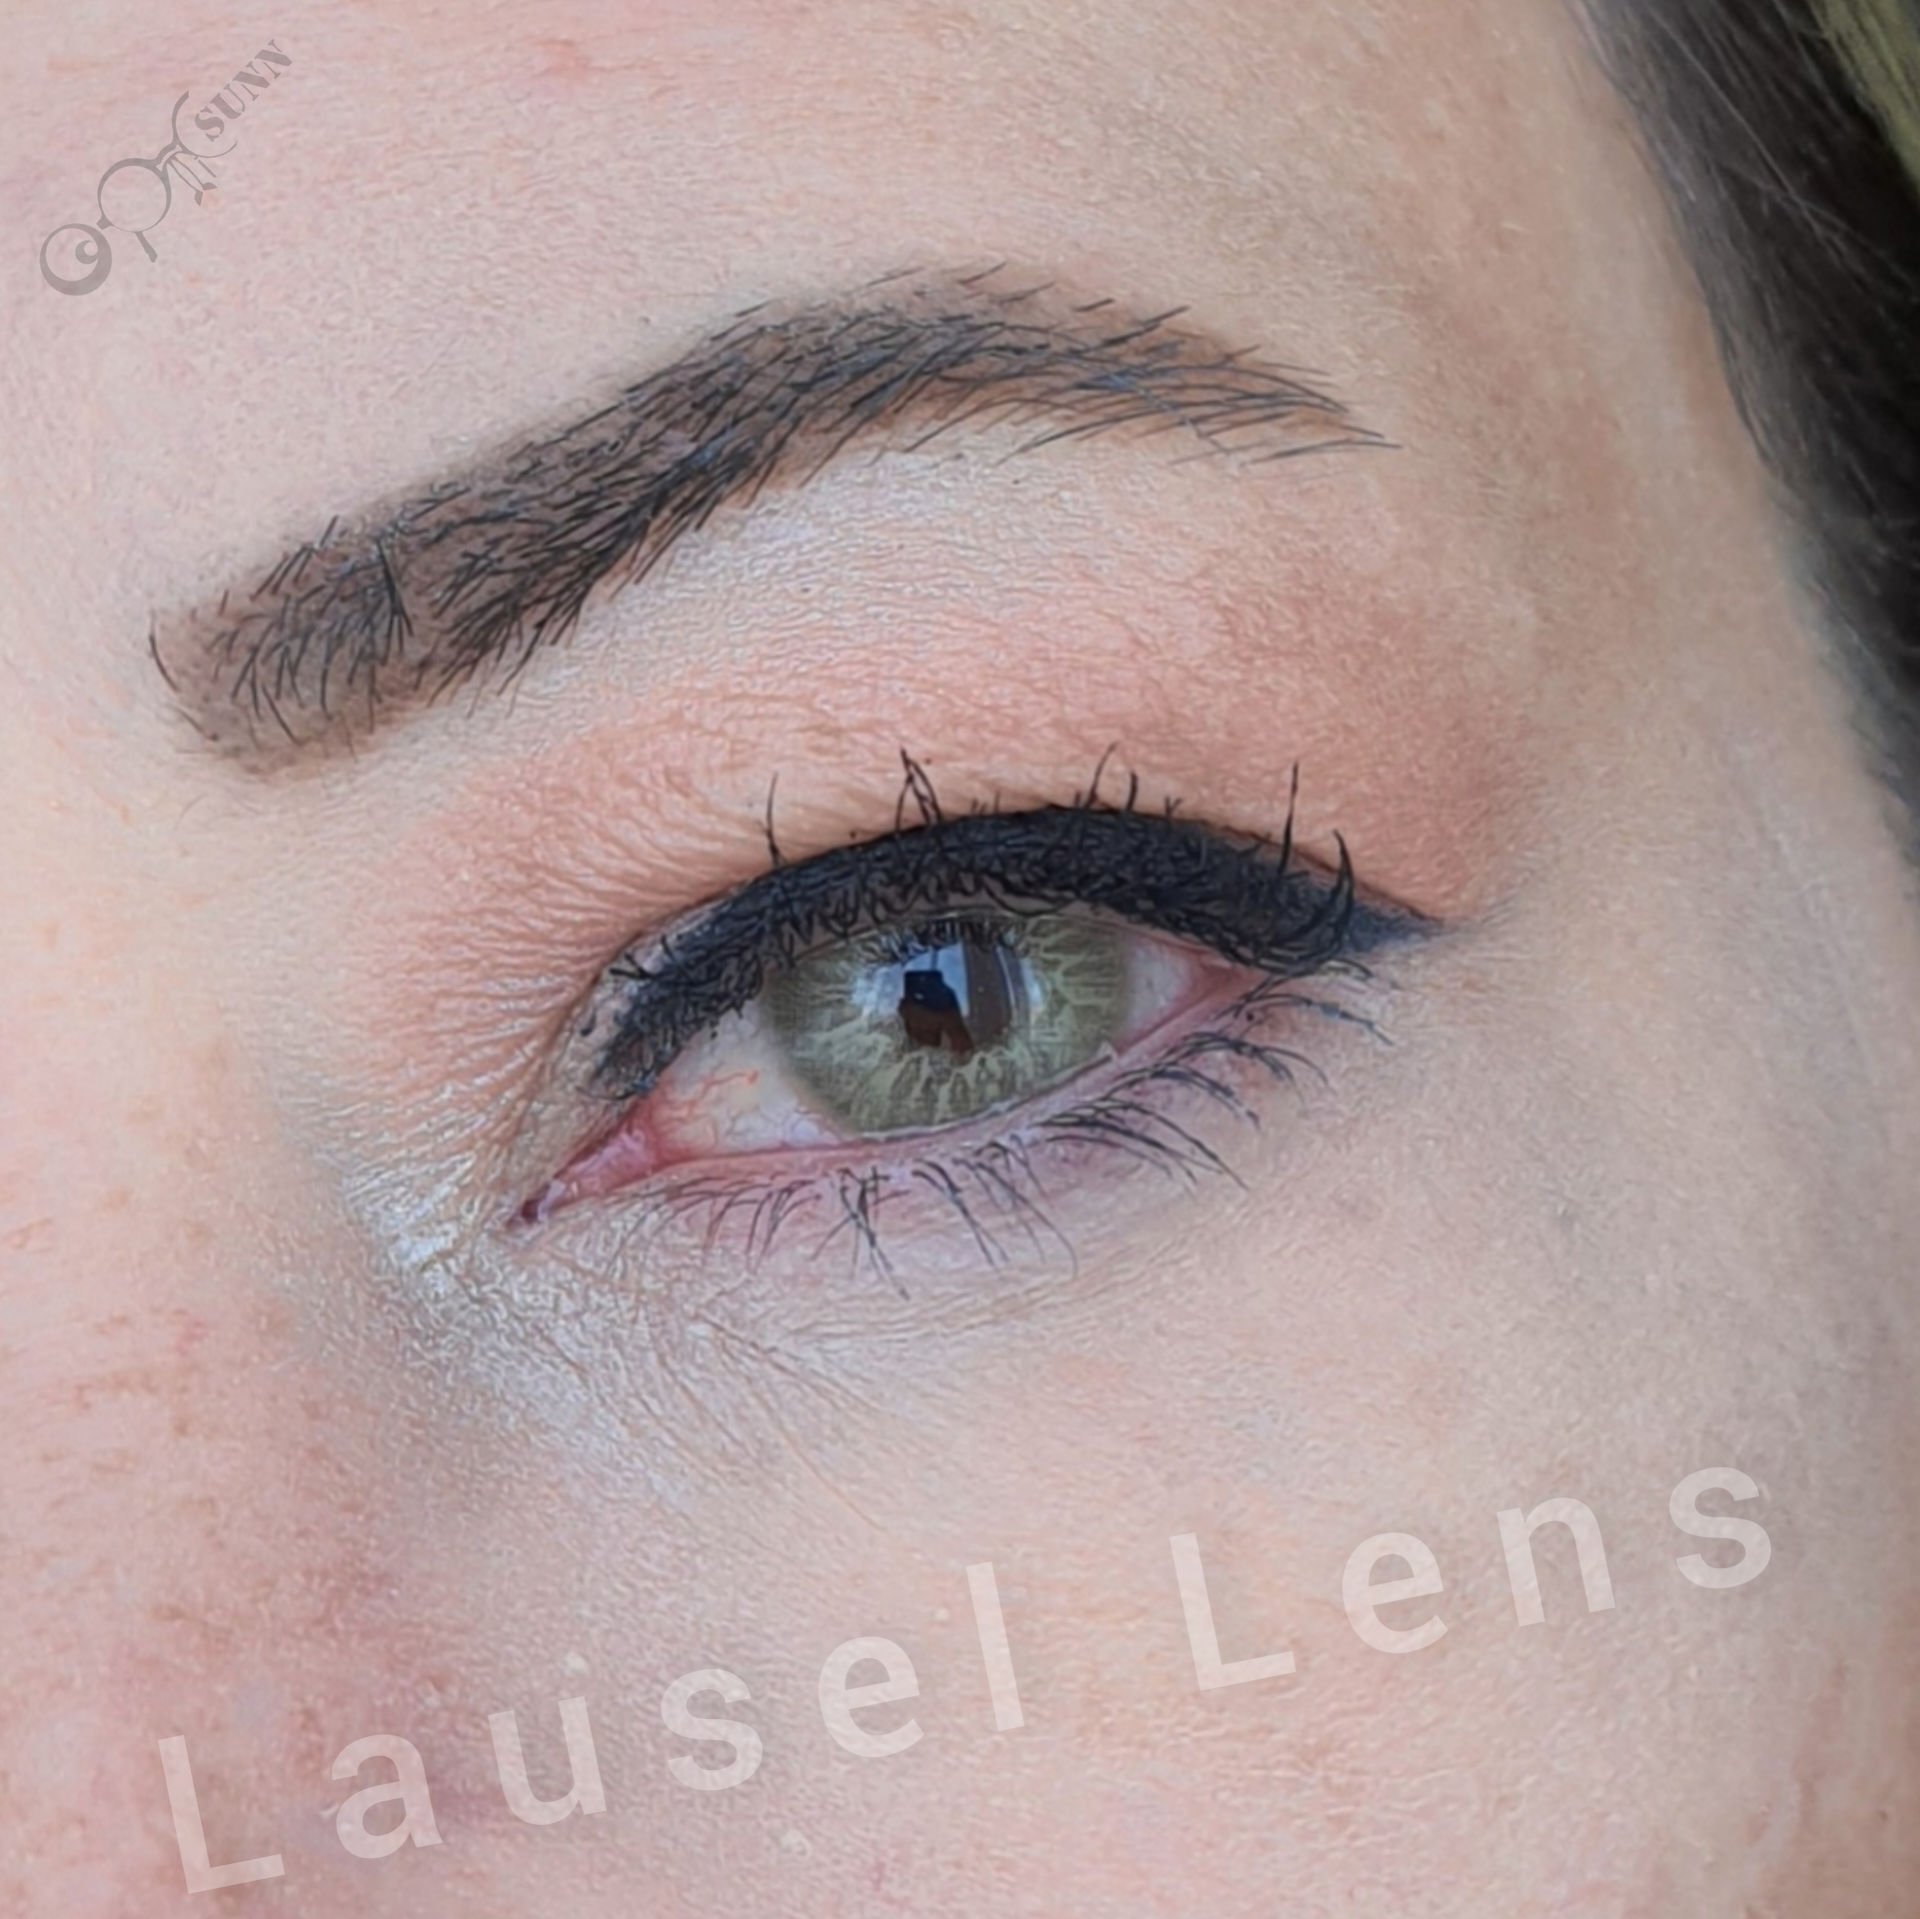 Lausel Lens Desert